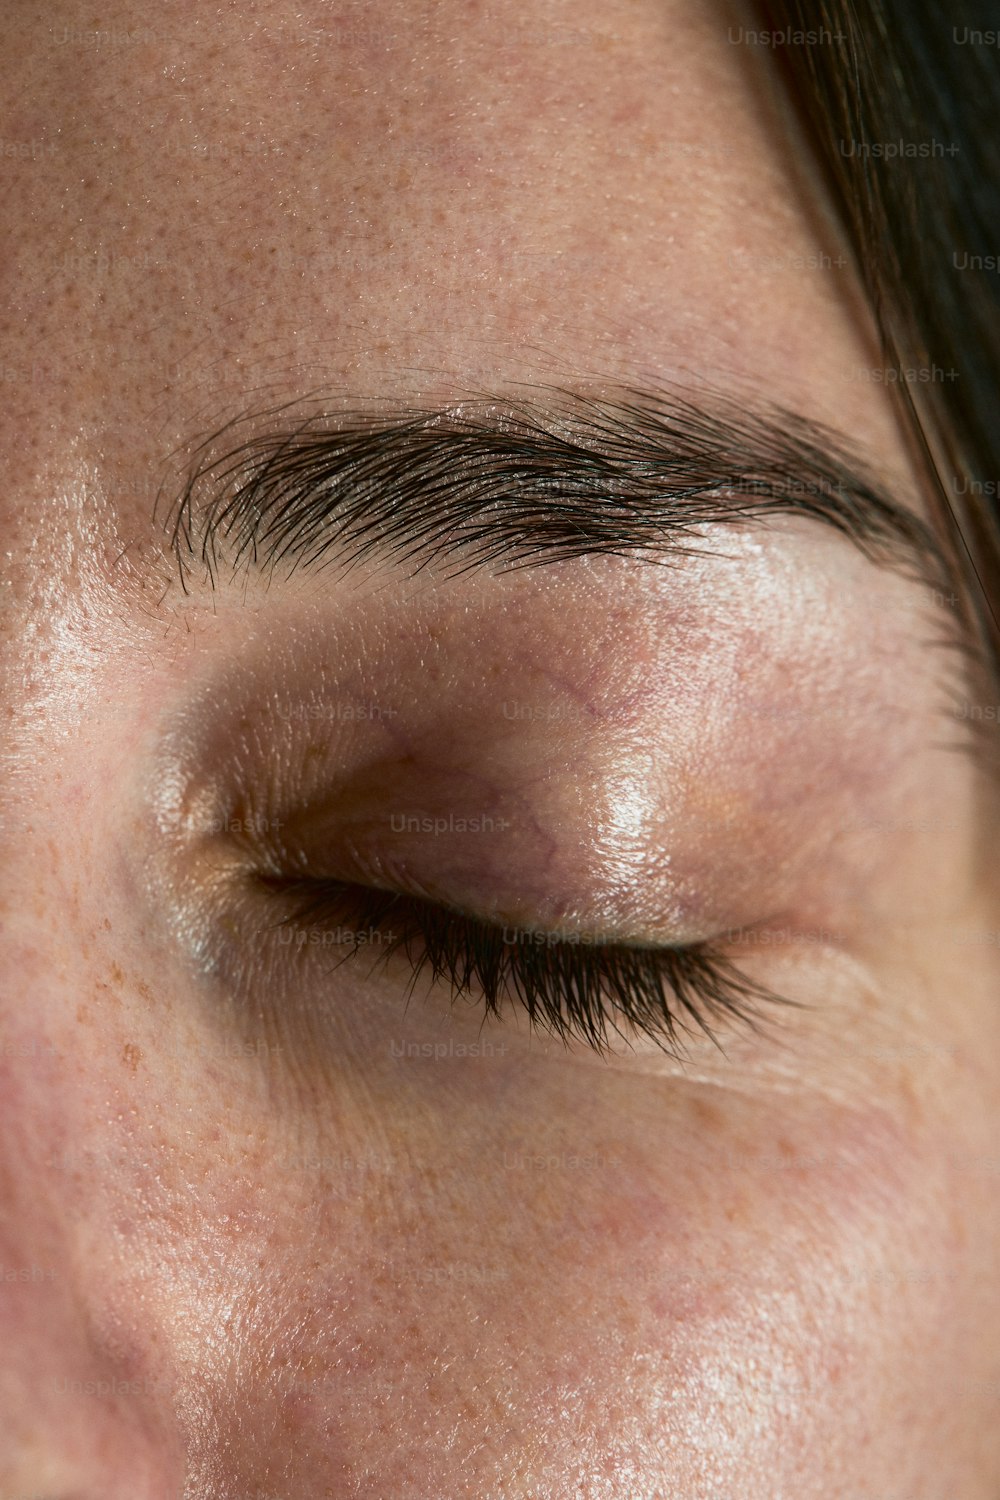 Eine Nahaufnahme des Auges einer Person mit einem braunen Fleck darauf